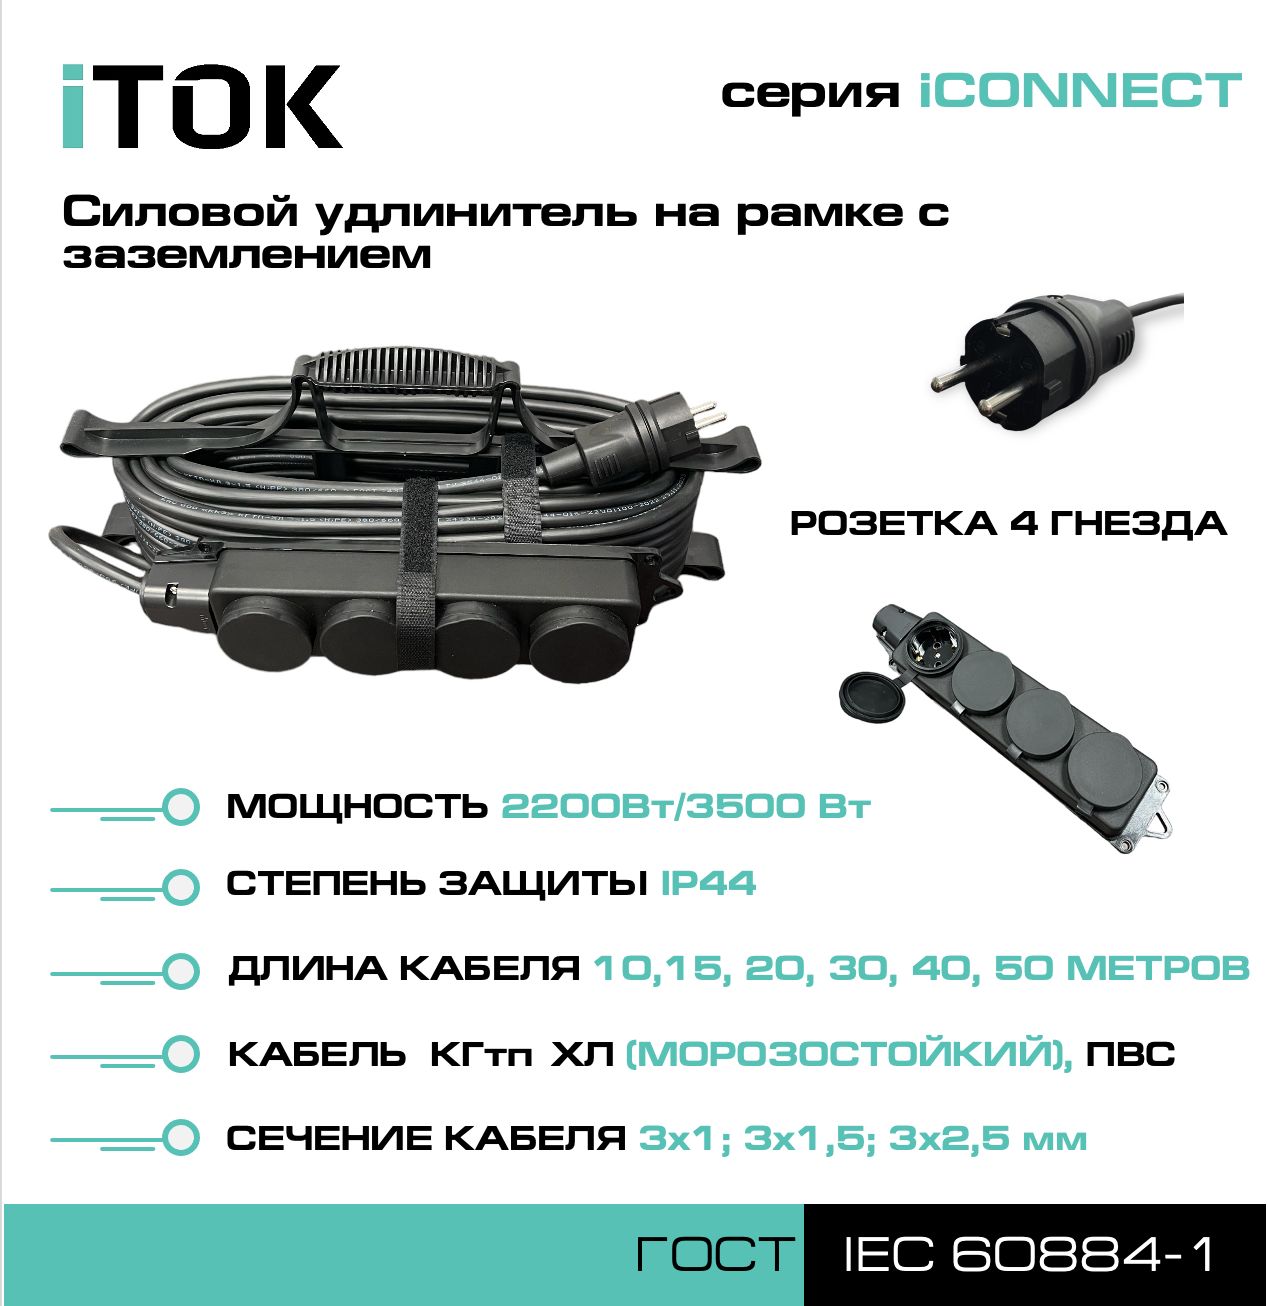 Удлинитель на рамке с заземлением серии iTOK iCONNECT КГтп-ХЛ 3х1,5 мм 4 гнезда IP44 30 м удлинитель navigator npe s 05 300 x 2x0 75 б з 5 гнезда 3м 71553